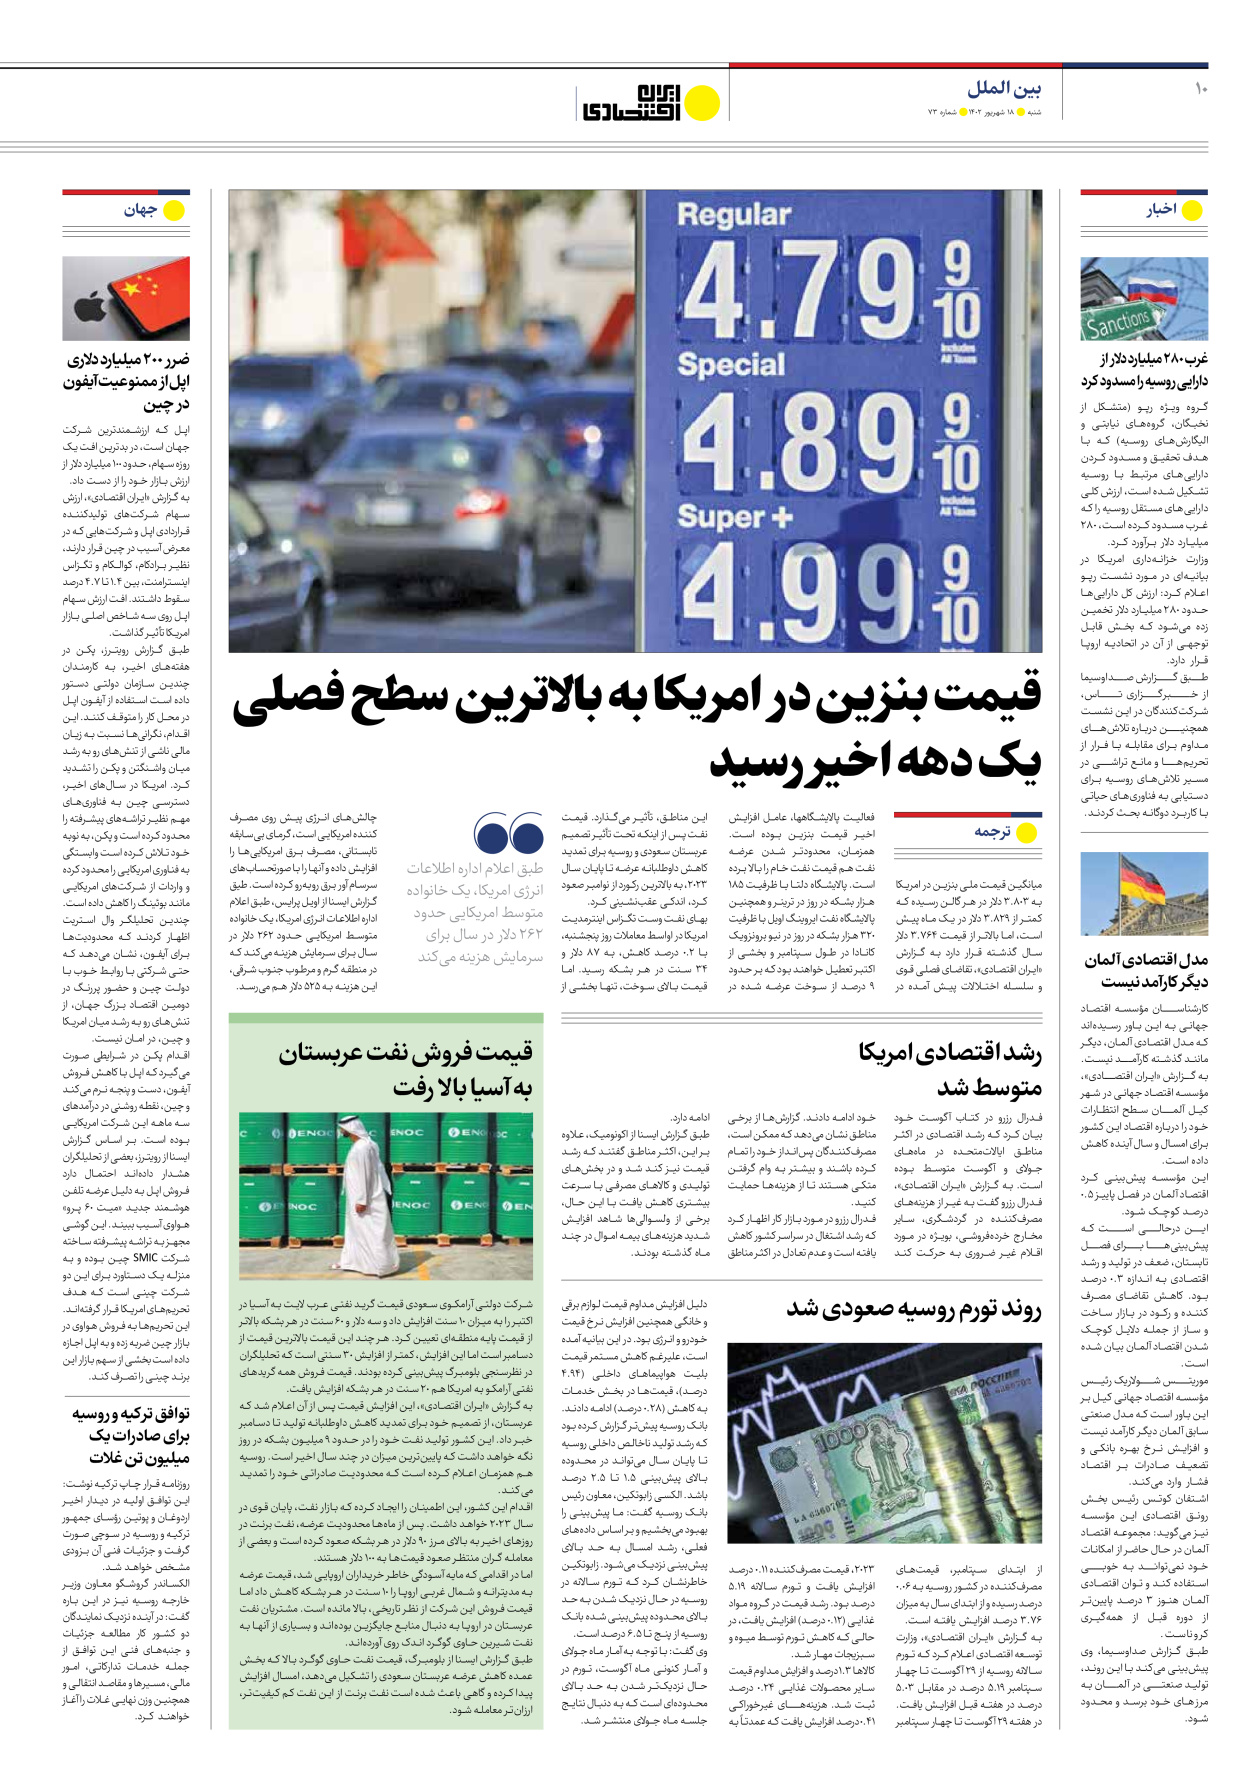 روزنامه ایران اقتصادی - شماره هفتاد و سه - ۱۸ شهریور ۱۴۰۲ - صفحه ۱۰